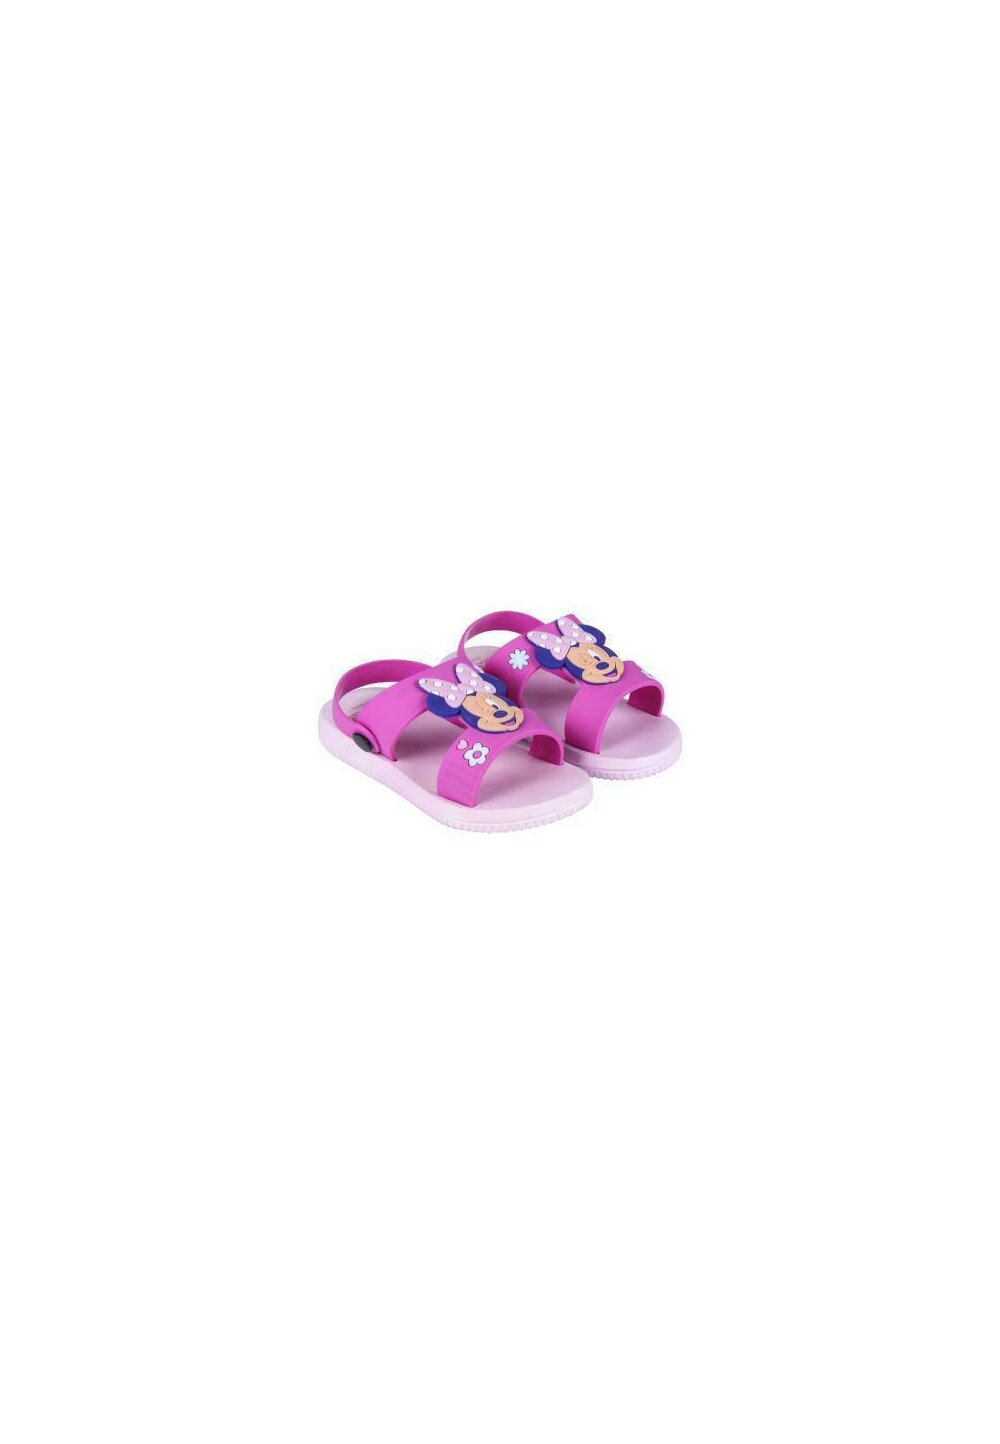 Sandale, Minnie M. roz cu floricele DISNEY